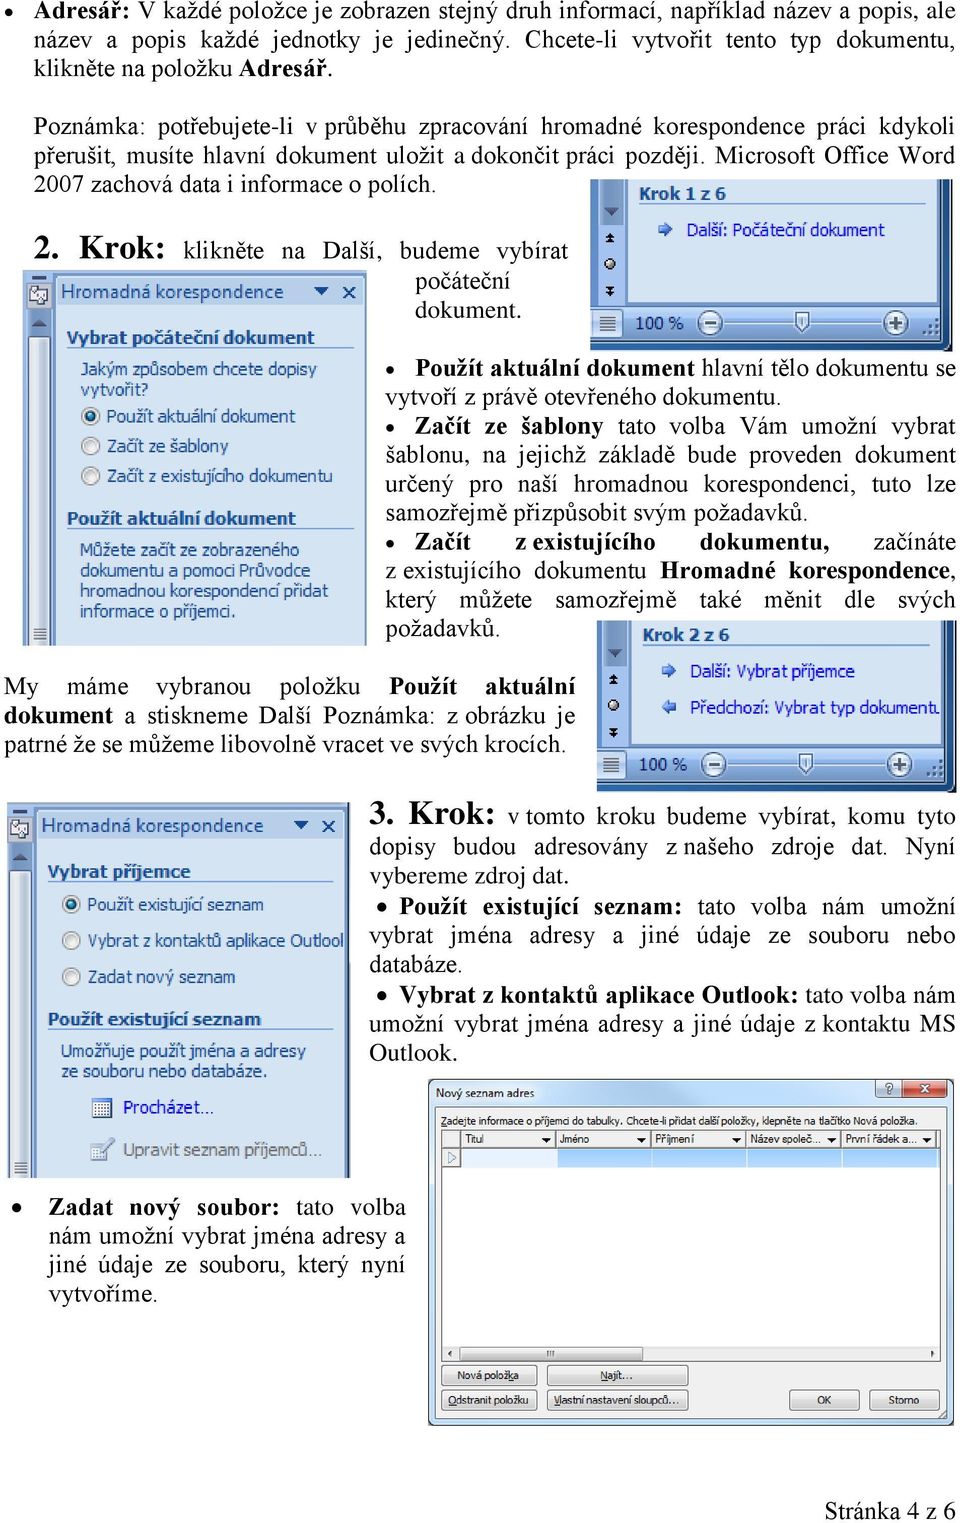 Microsoft Office Word 2007 zachová data i informace o polích. 2. Krok: klikněte na Další, budeme vybírat počáteční dokument.